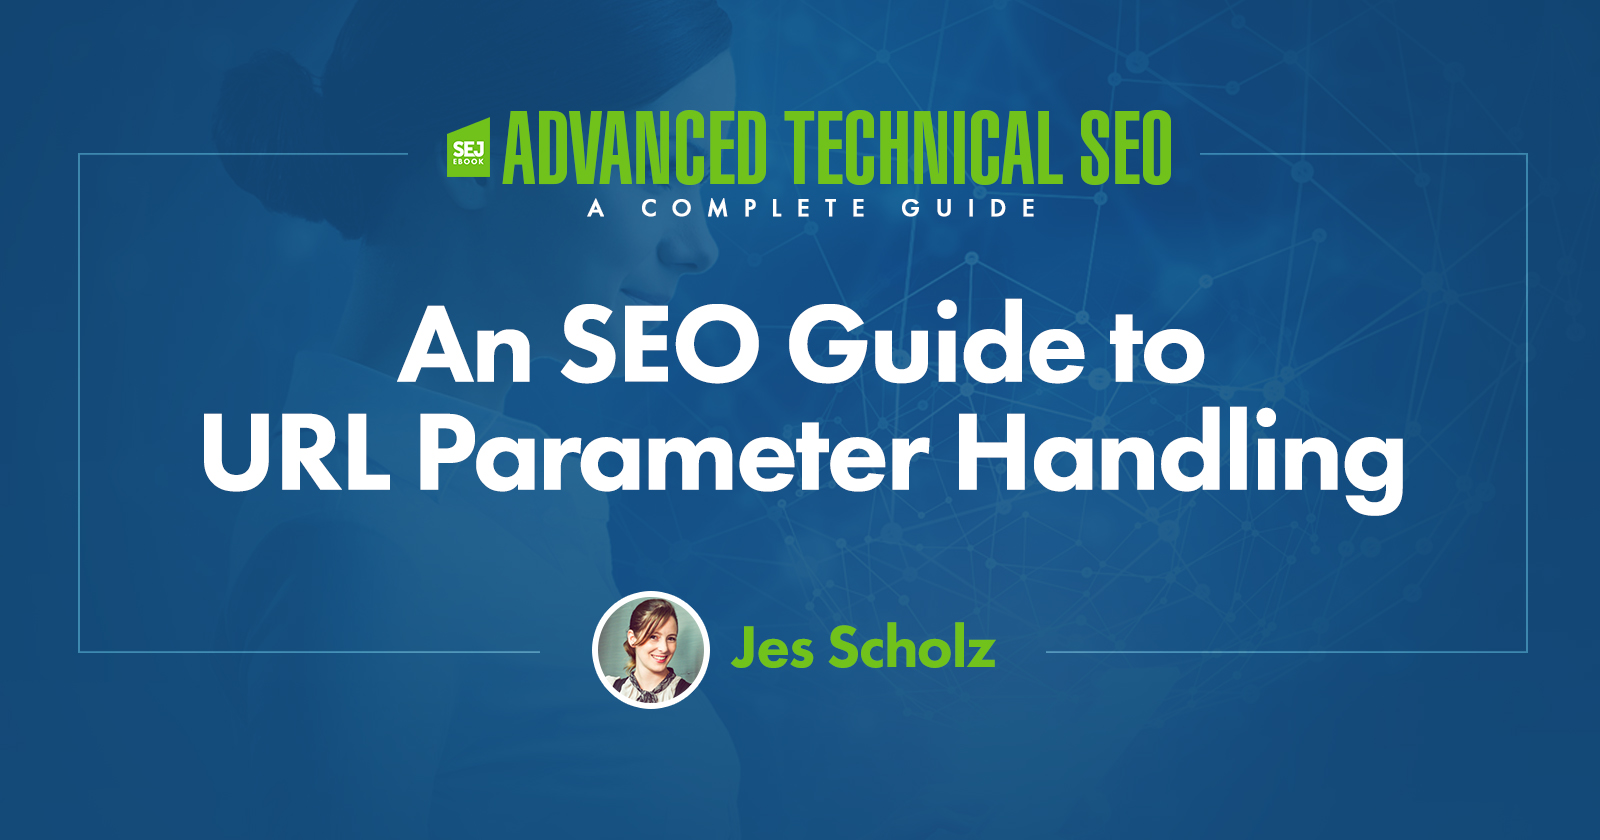 An SEO Guide to URL Parameter Handling